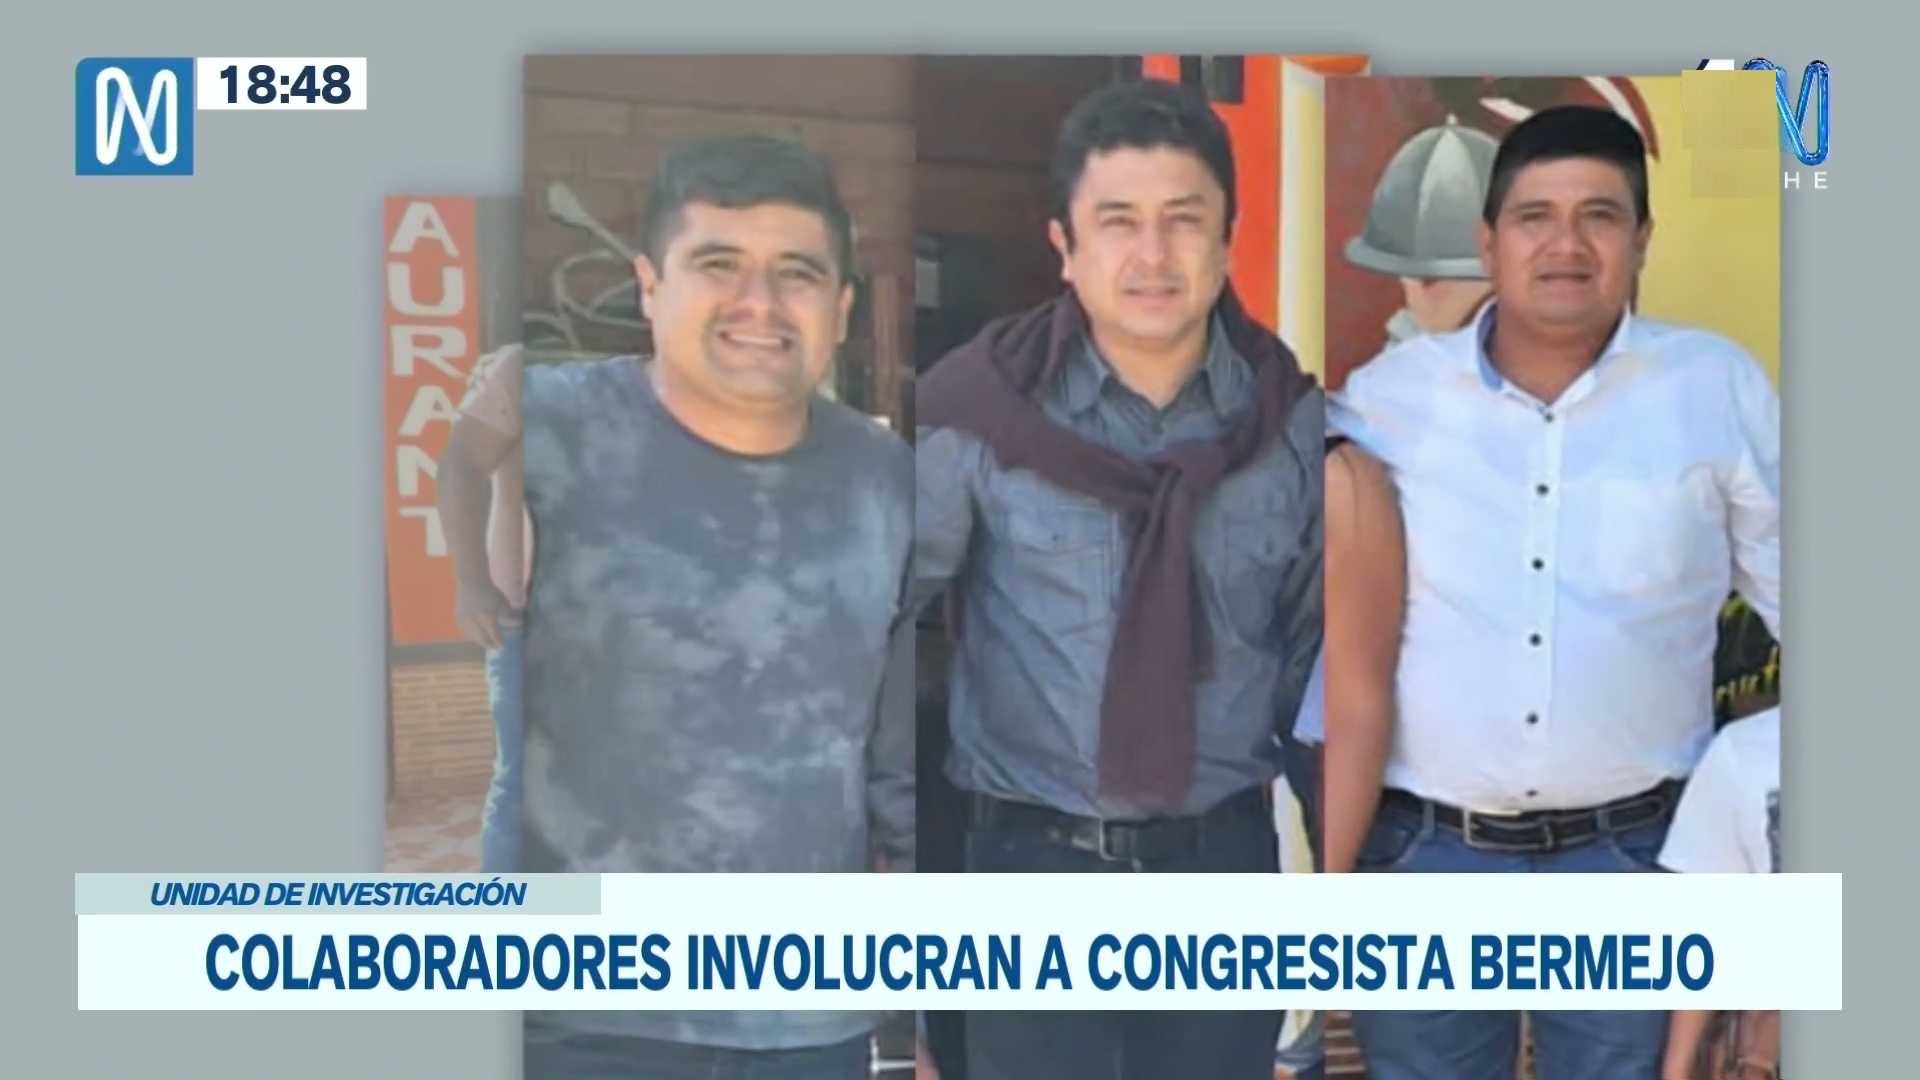 El congresista Guillermo Bermejo junto a Yul Valdivia y el hermano de este - Foto: Canal N